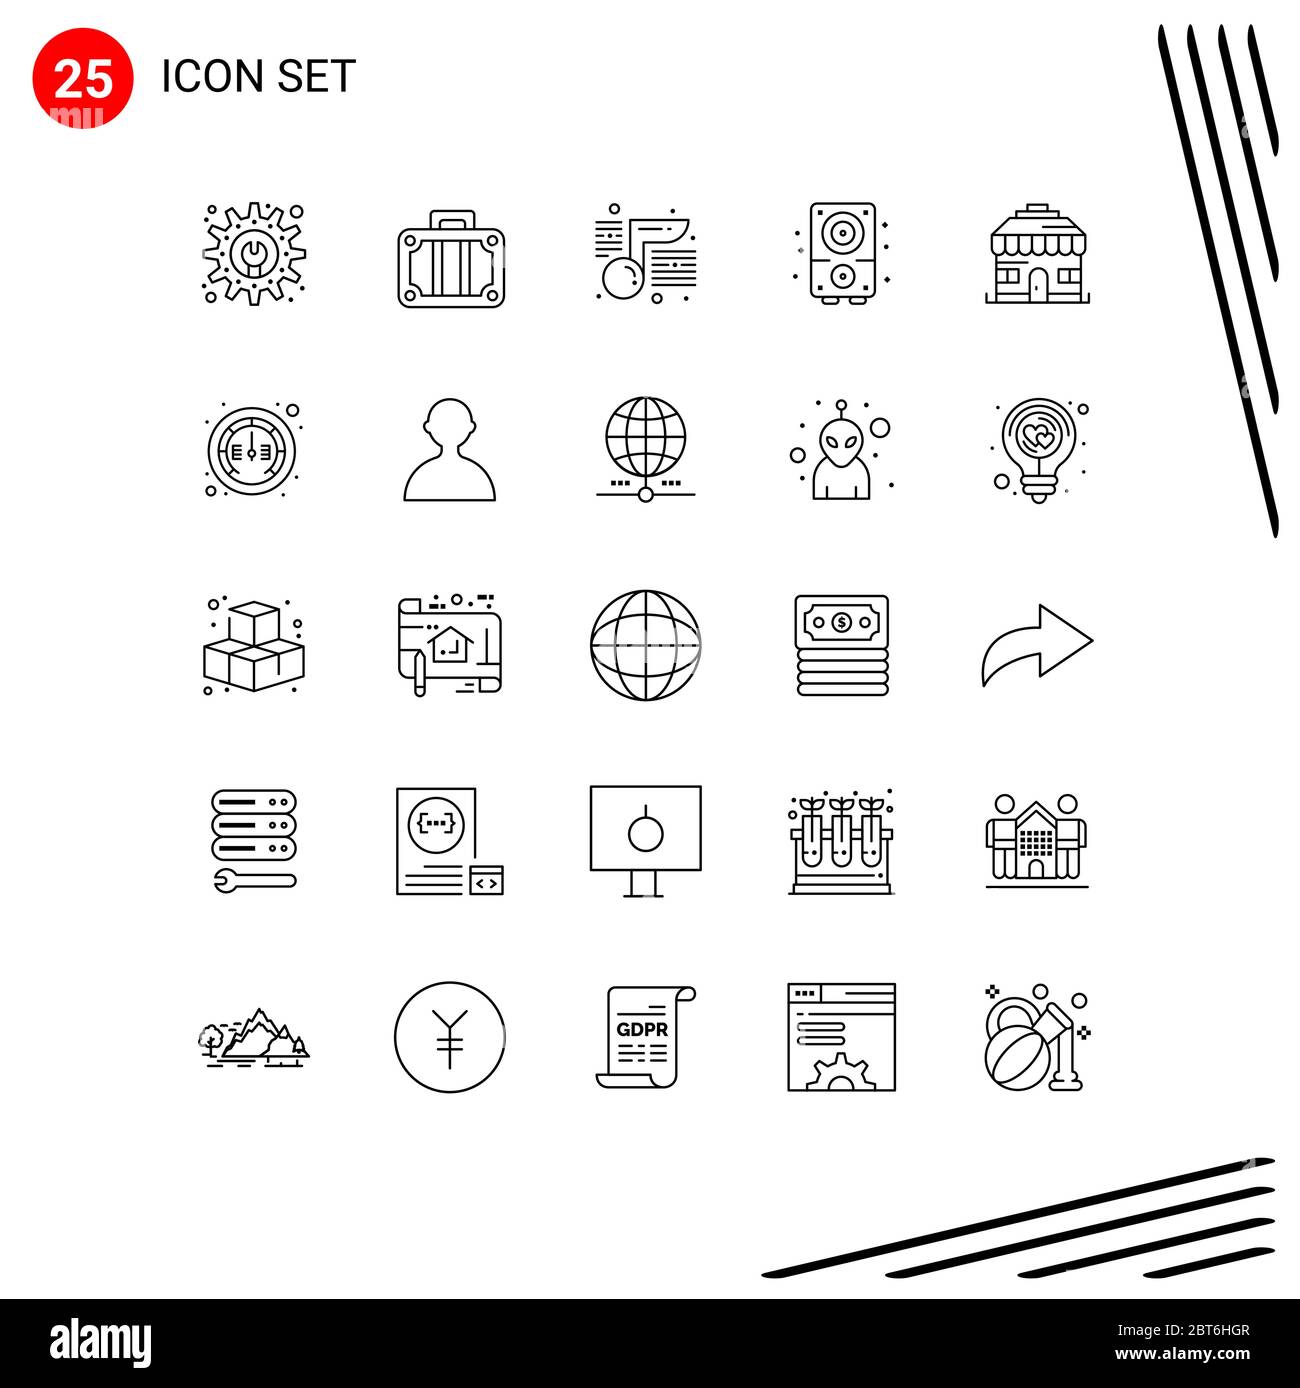 Set di 25 icone moderne dell'interfaccia utente simboli per negozi, edifici, note, suoni, elementi multimediali editabili di Vector Design Illustrazione Vettoriale